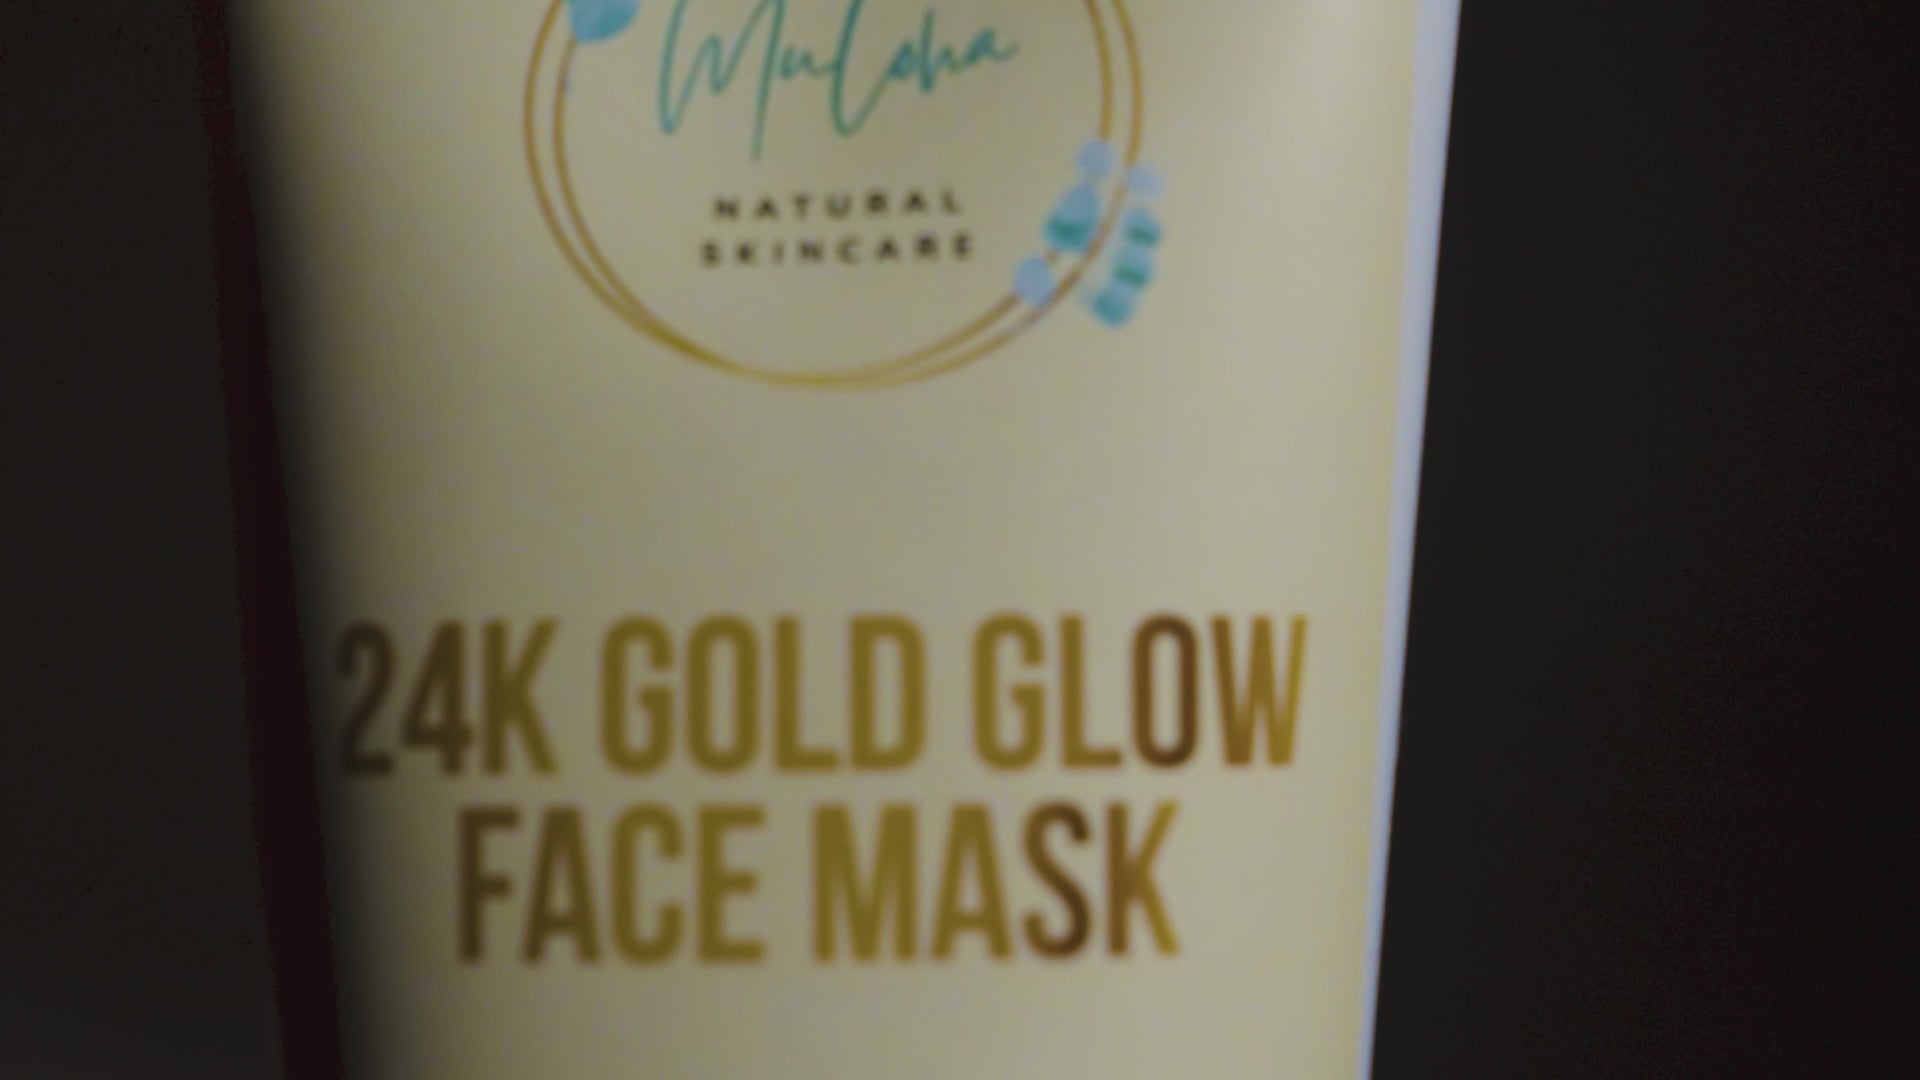 24 Karat Gold Glow Face Mask 